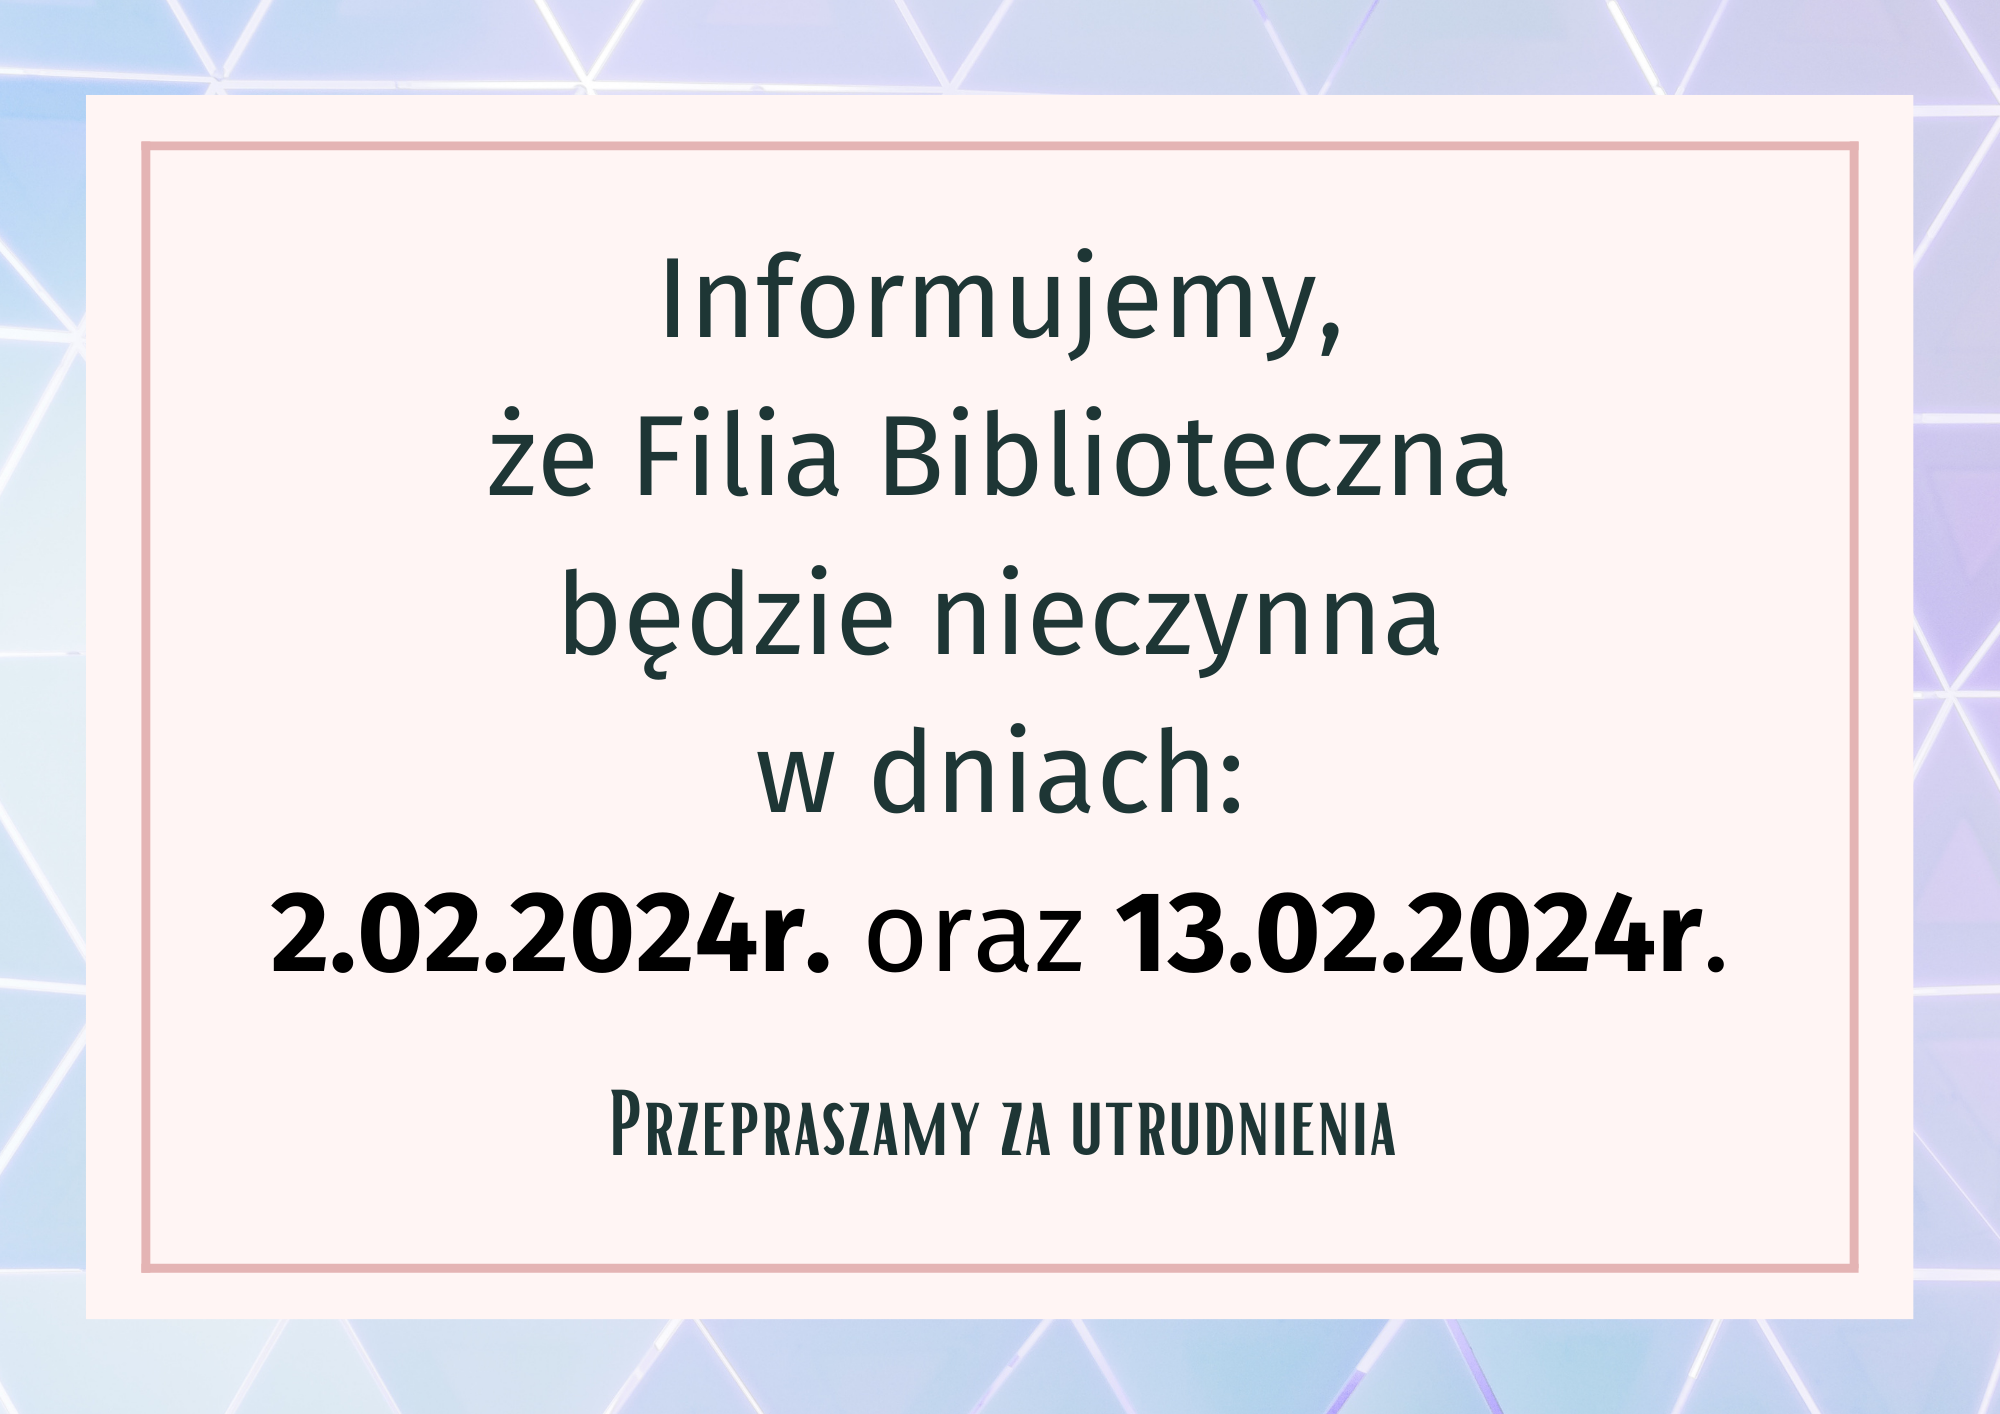 Uprzejmie informujemy, że Filia Biblioteczna będzie nieczynna w dniu 2.02.2024 r.(piątek) oraz 13.02 (wtorek). Za utrudnienia przepraszamy!